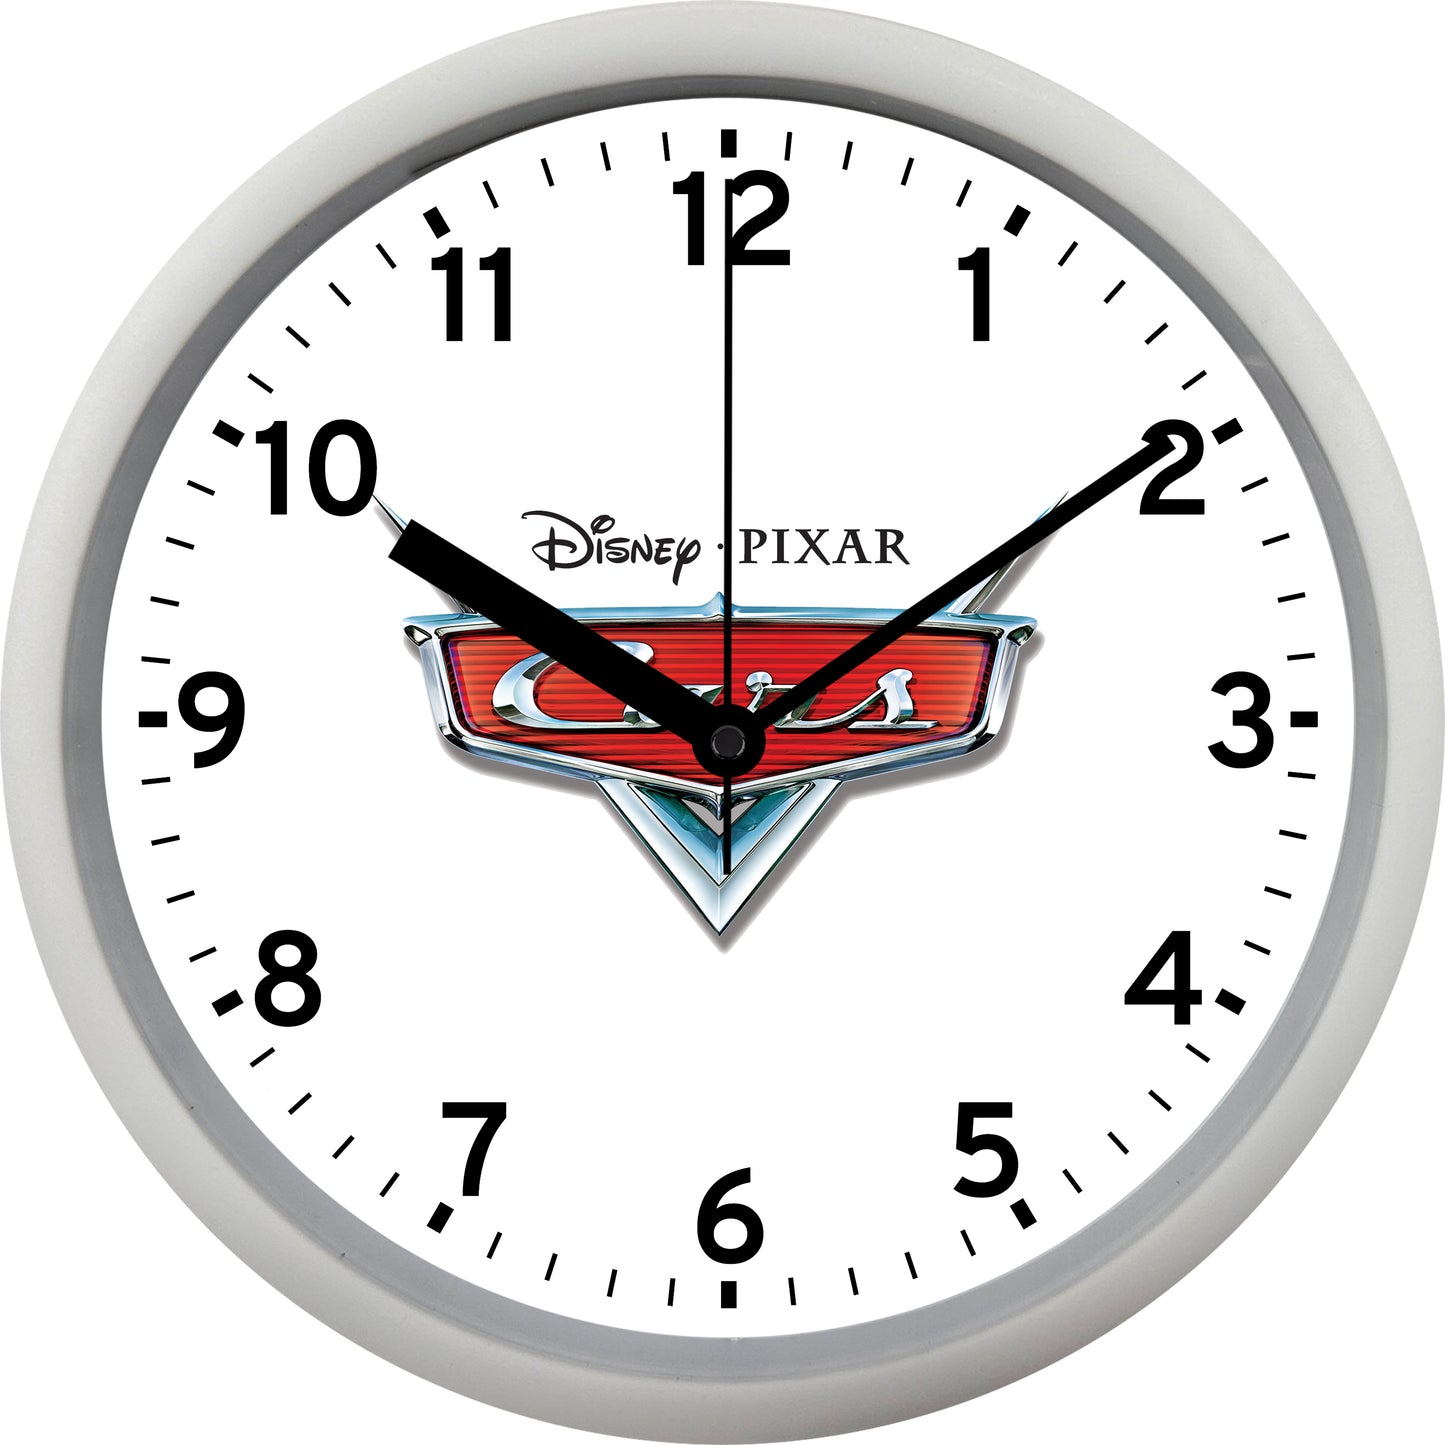 Disney Pixar "Cars" Wall Clock